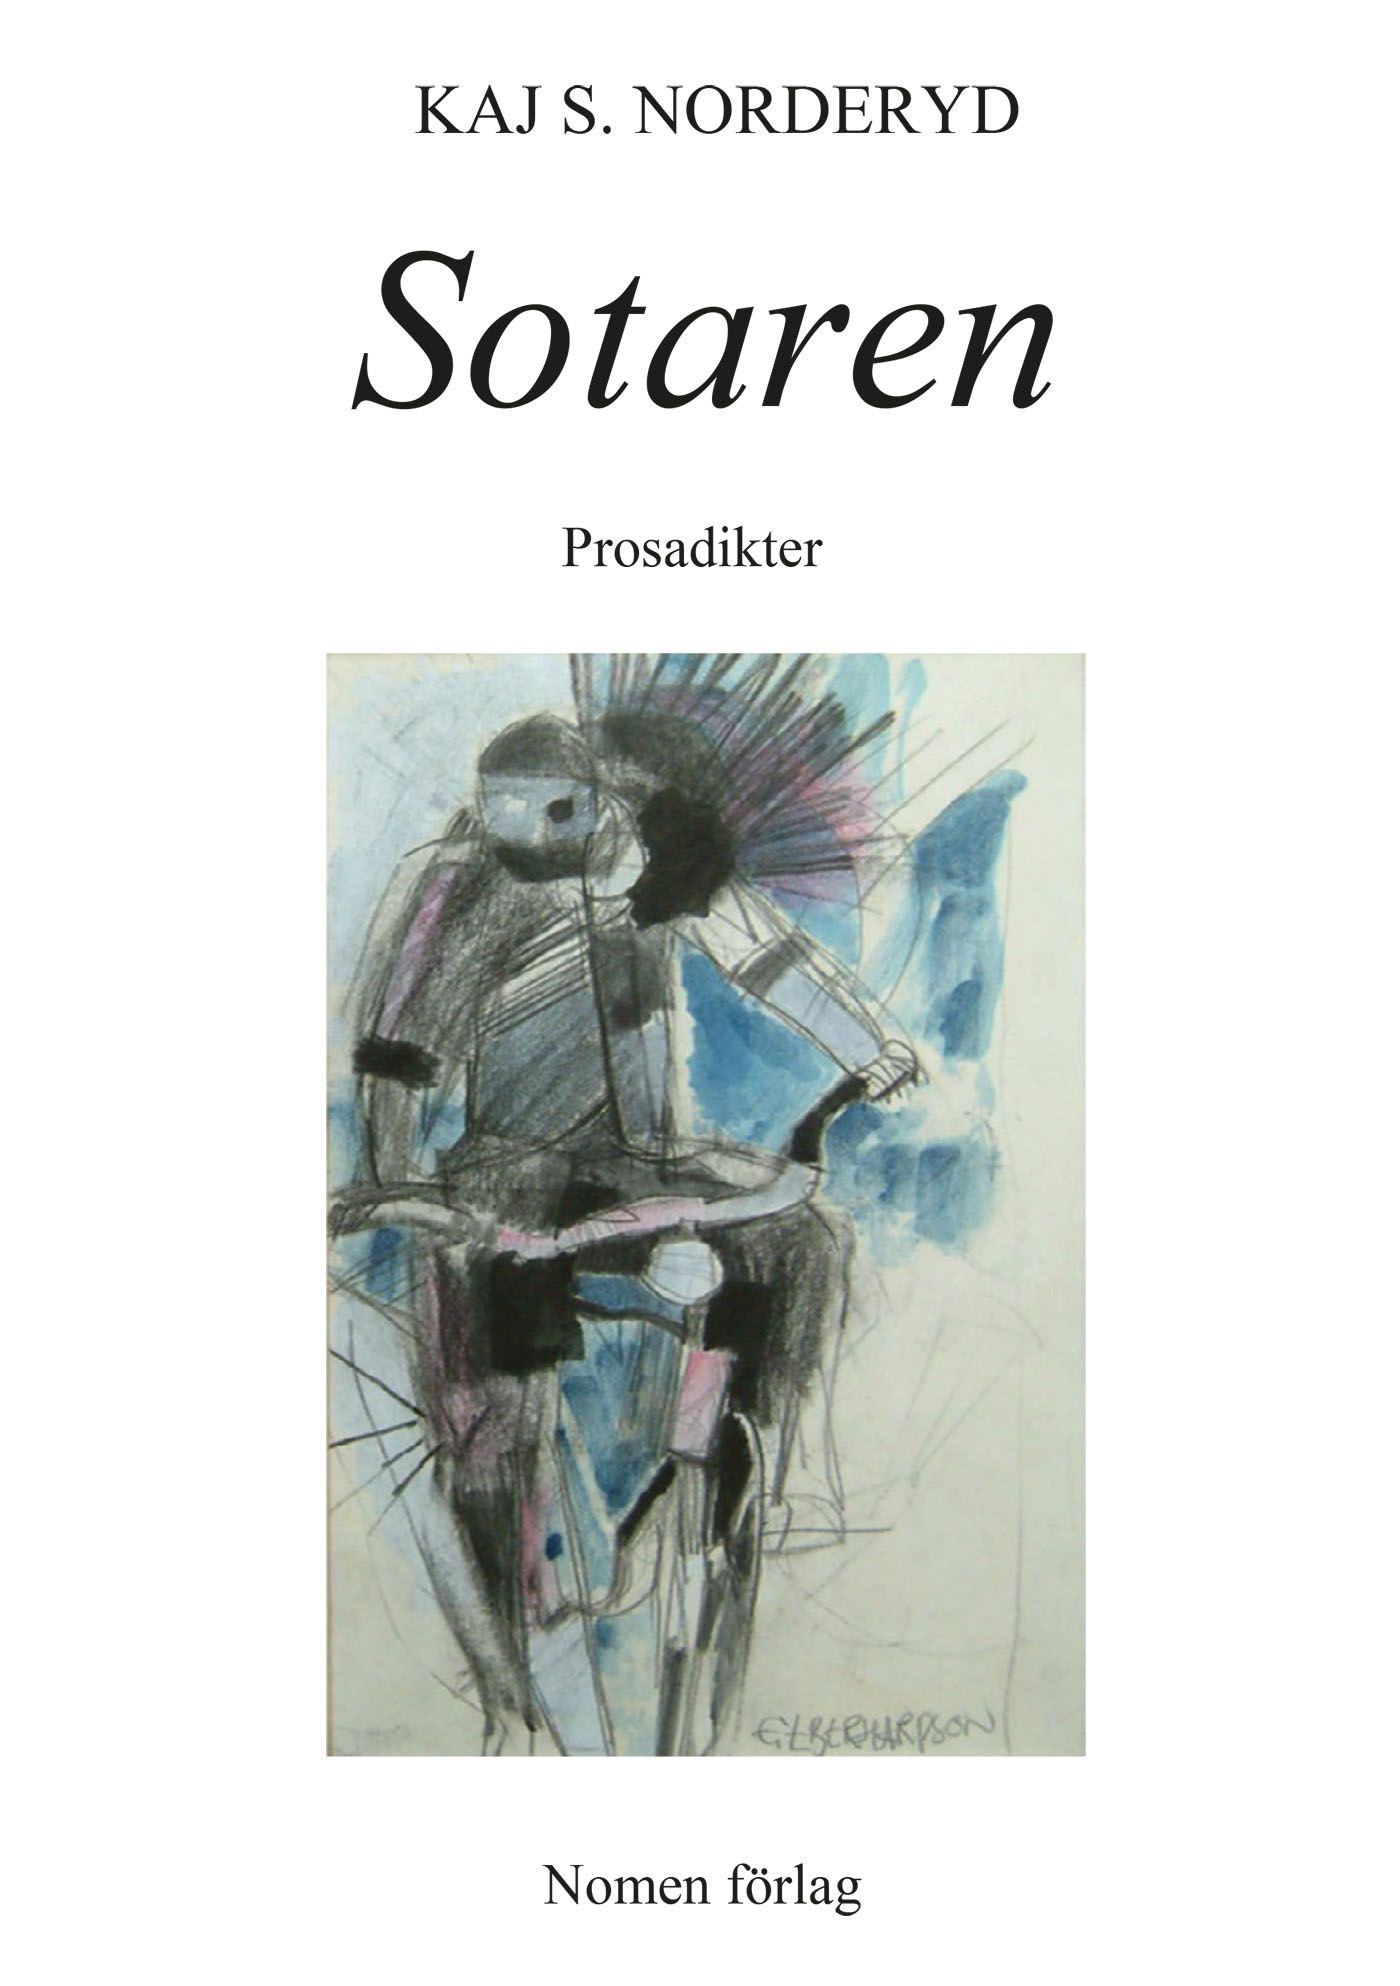 Sotaren - Prosadikter, e-bog af Kaj S. Norderyd